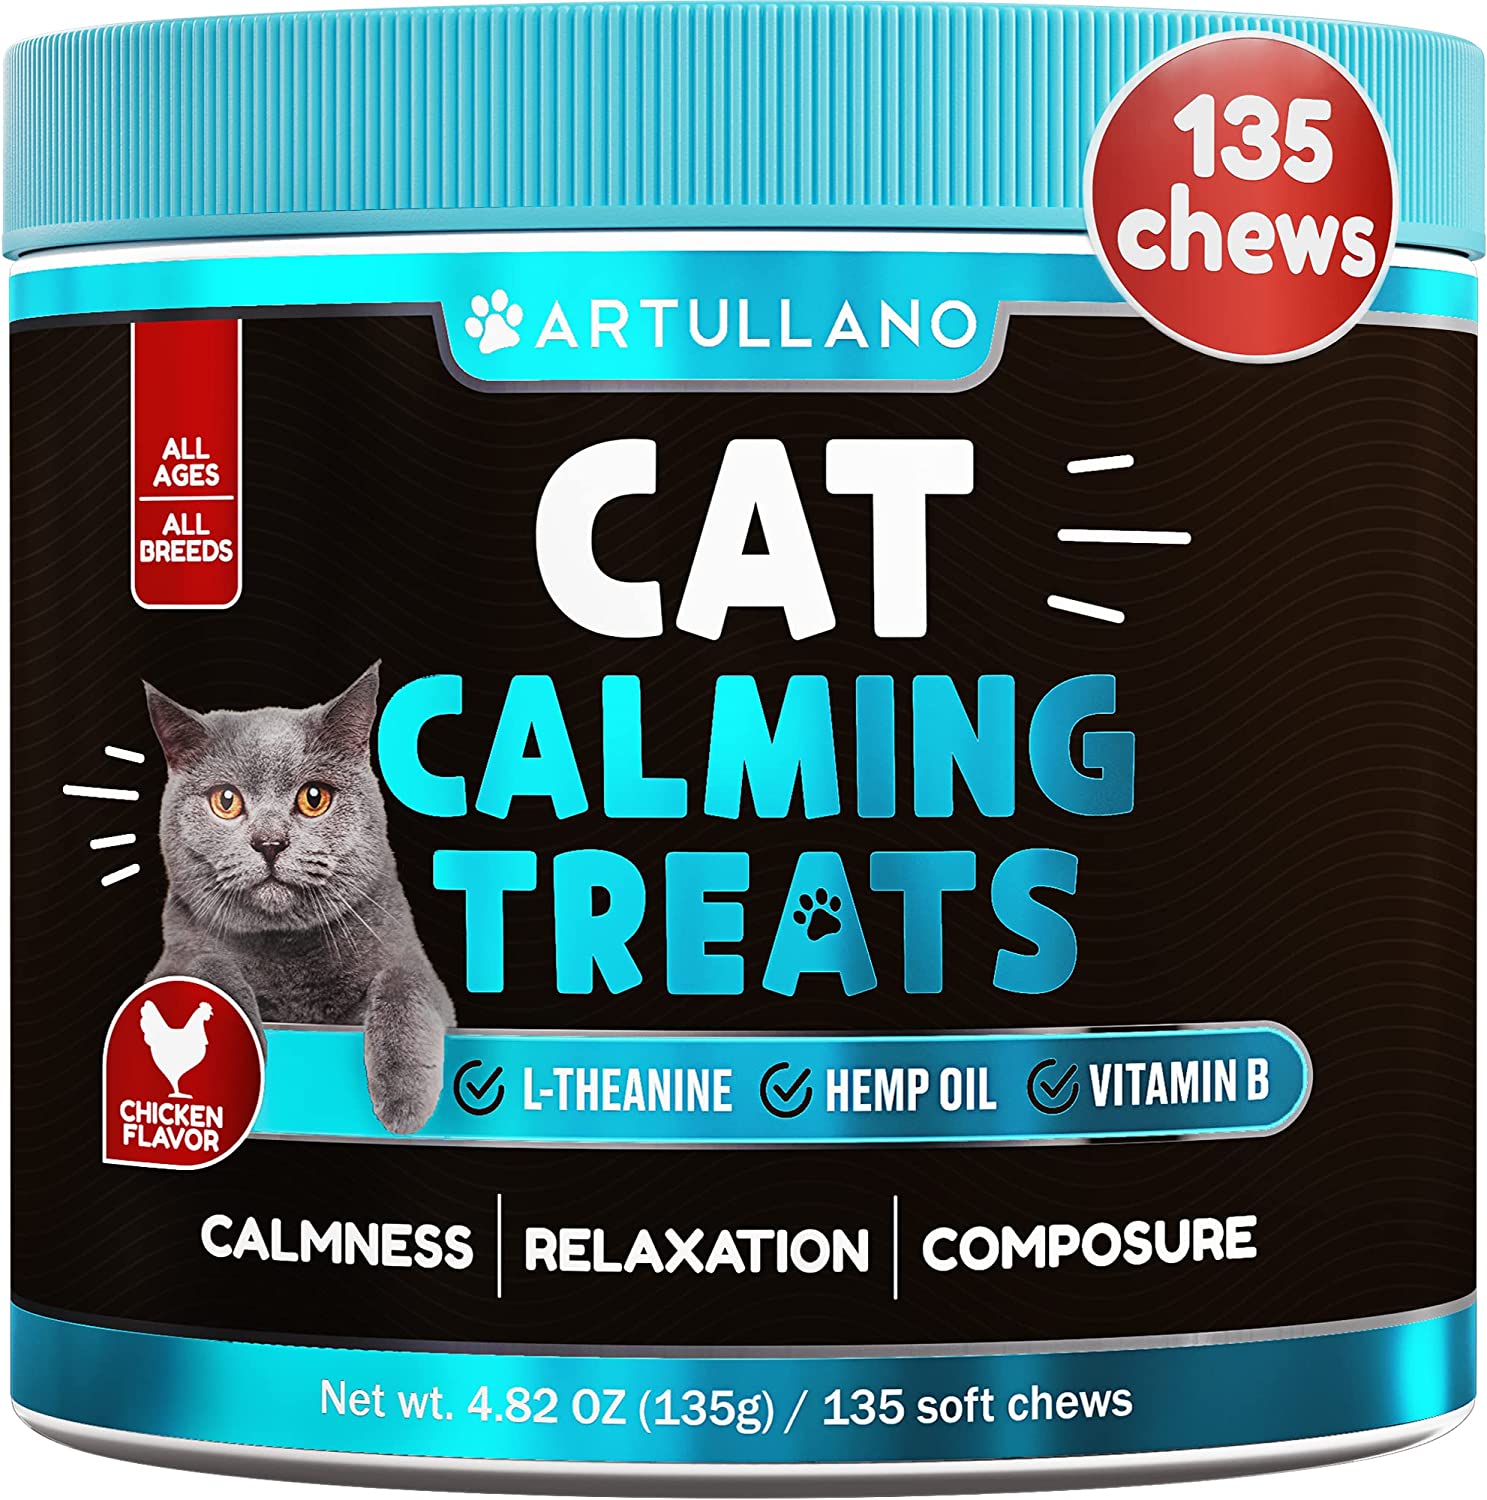 Artullano Hemp Cat Calming Treats